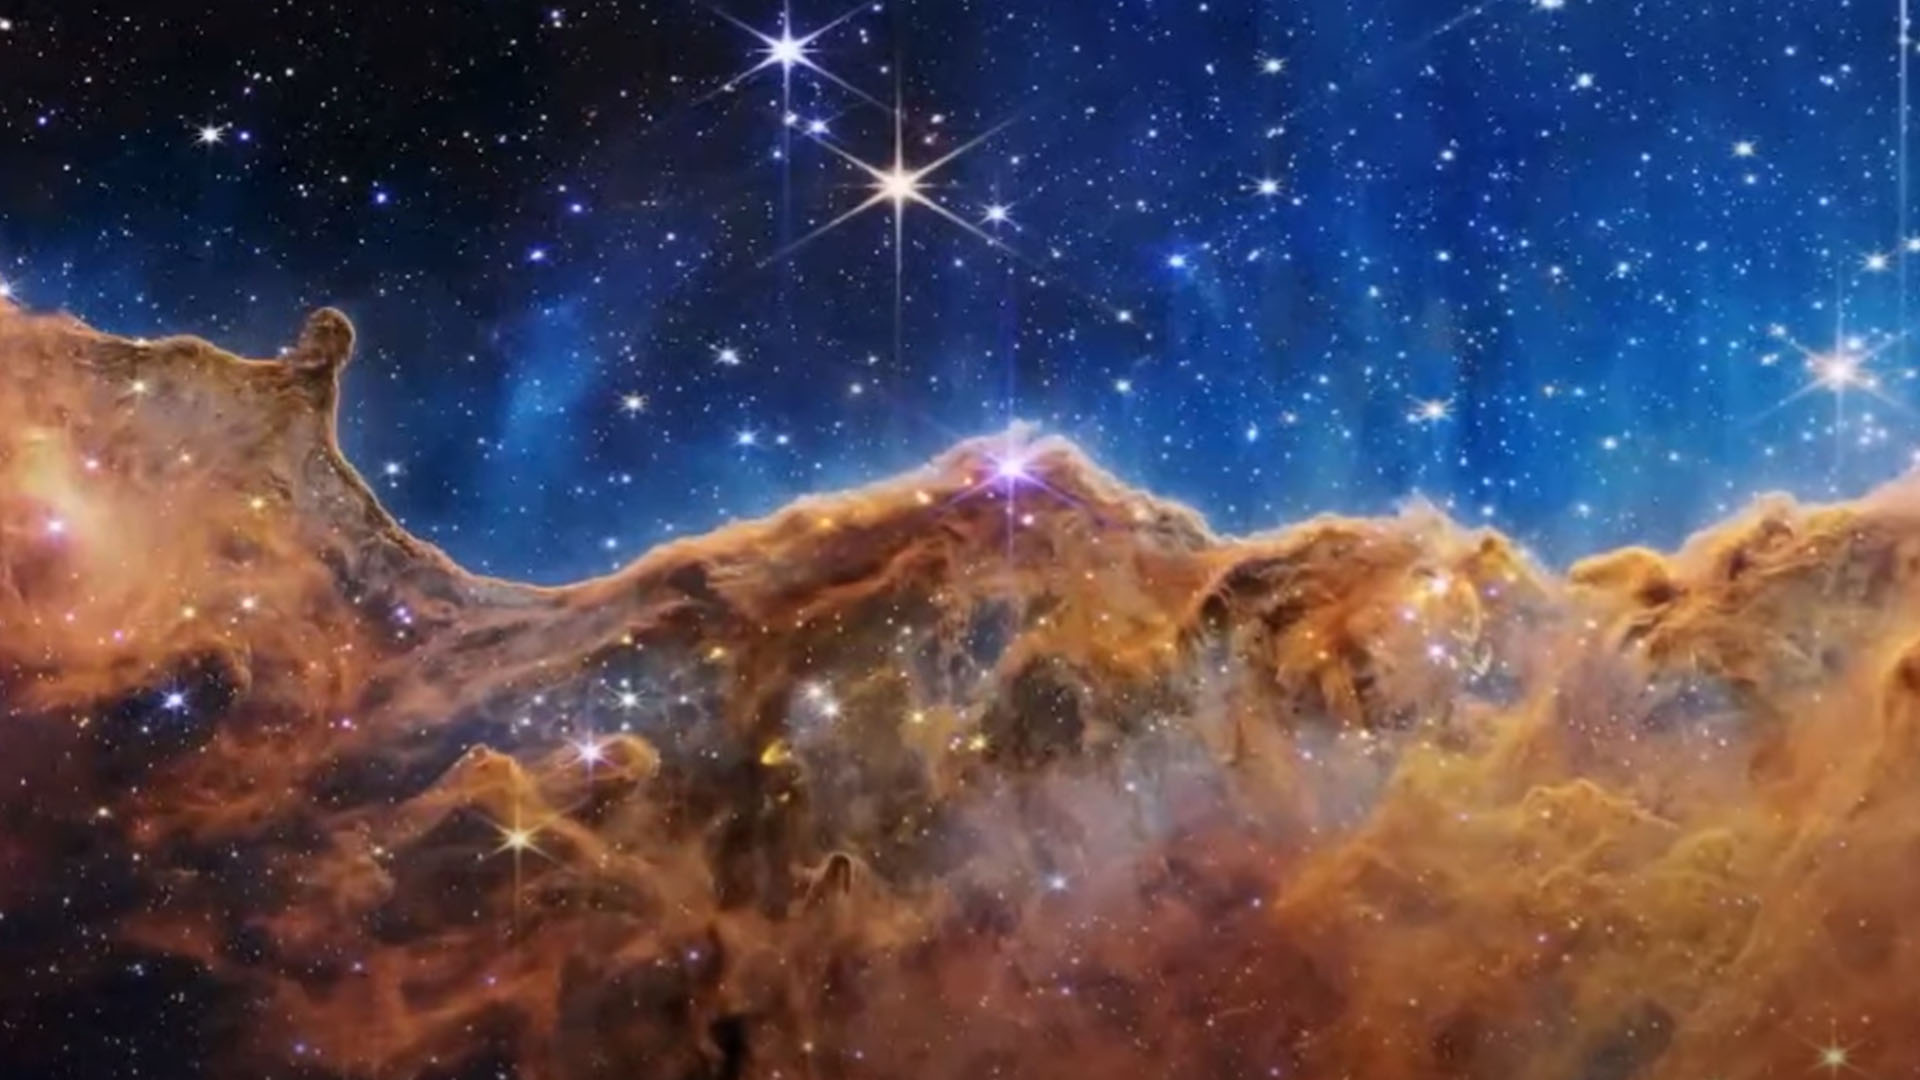 La Nebulosa Carina, que muestra las primeras etapas de la formación estelar. (Crédito...NASA, ESA, CSA y STScI)